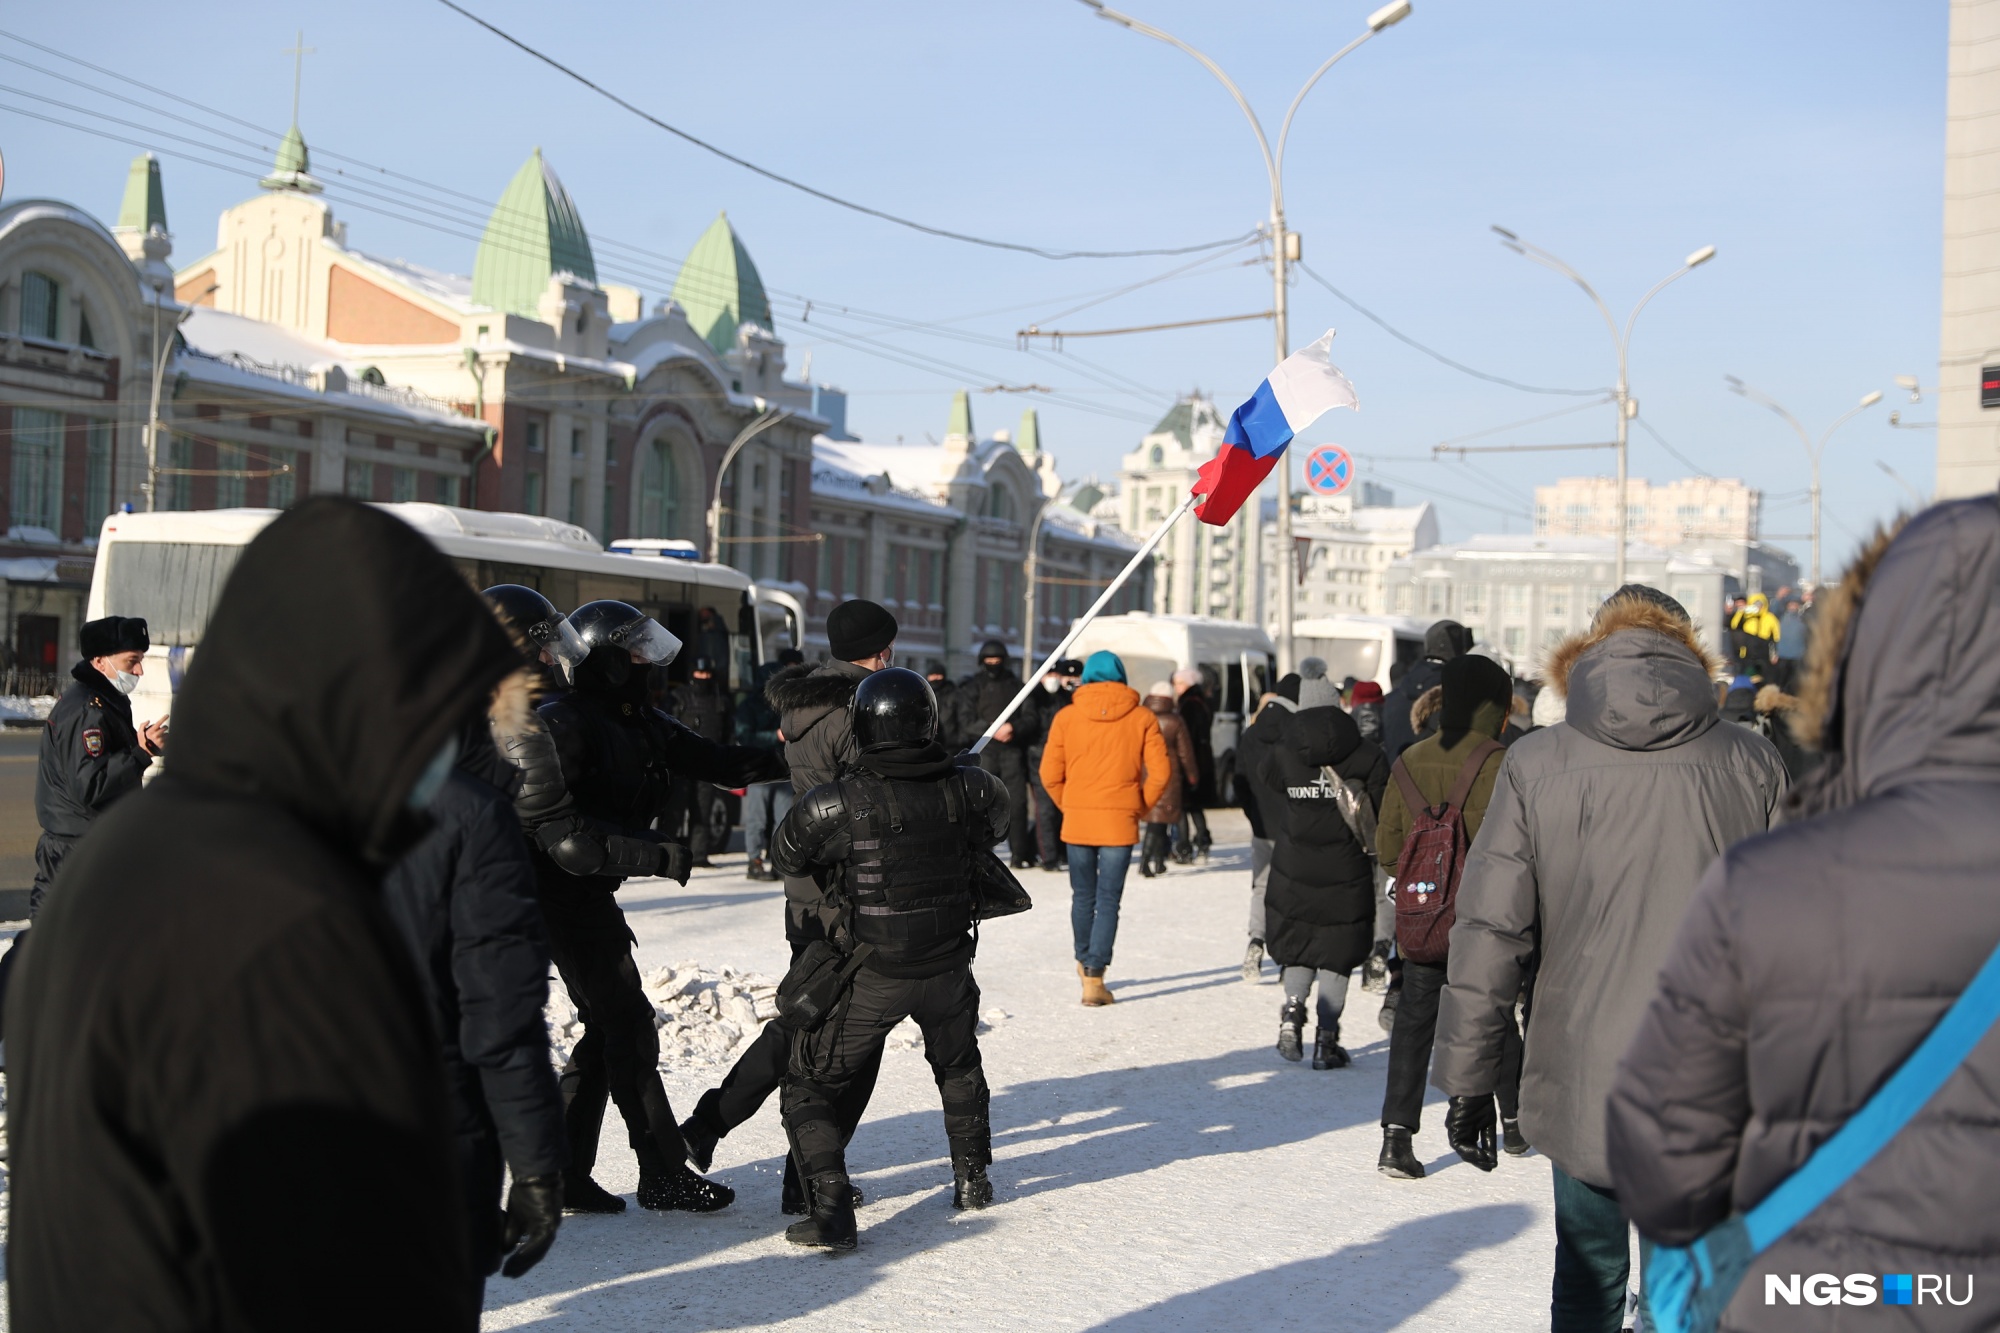 Напротив Первомайского сквера возле здания мэрии нескольких человек задержали, в том числе тех, кто достал российский флаг